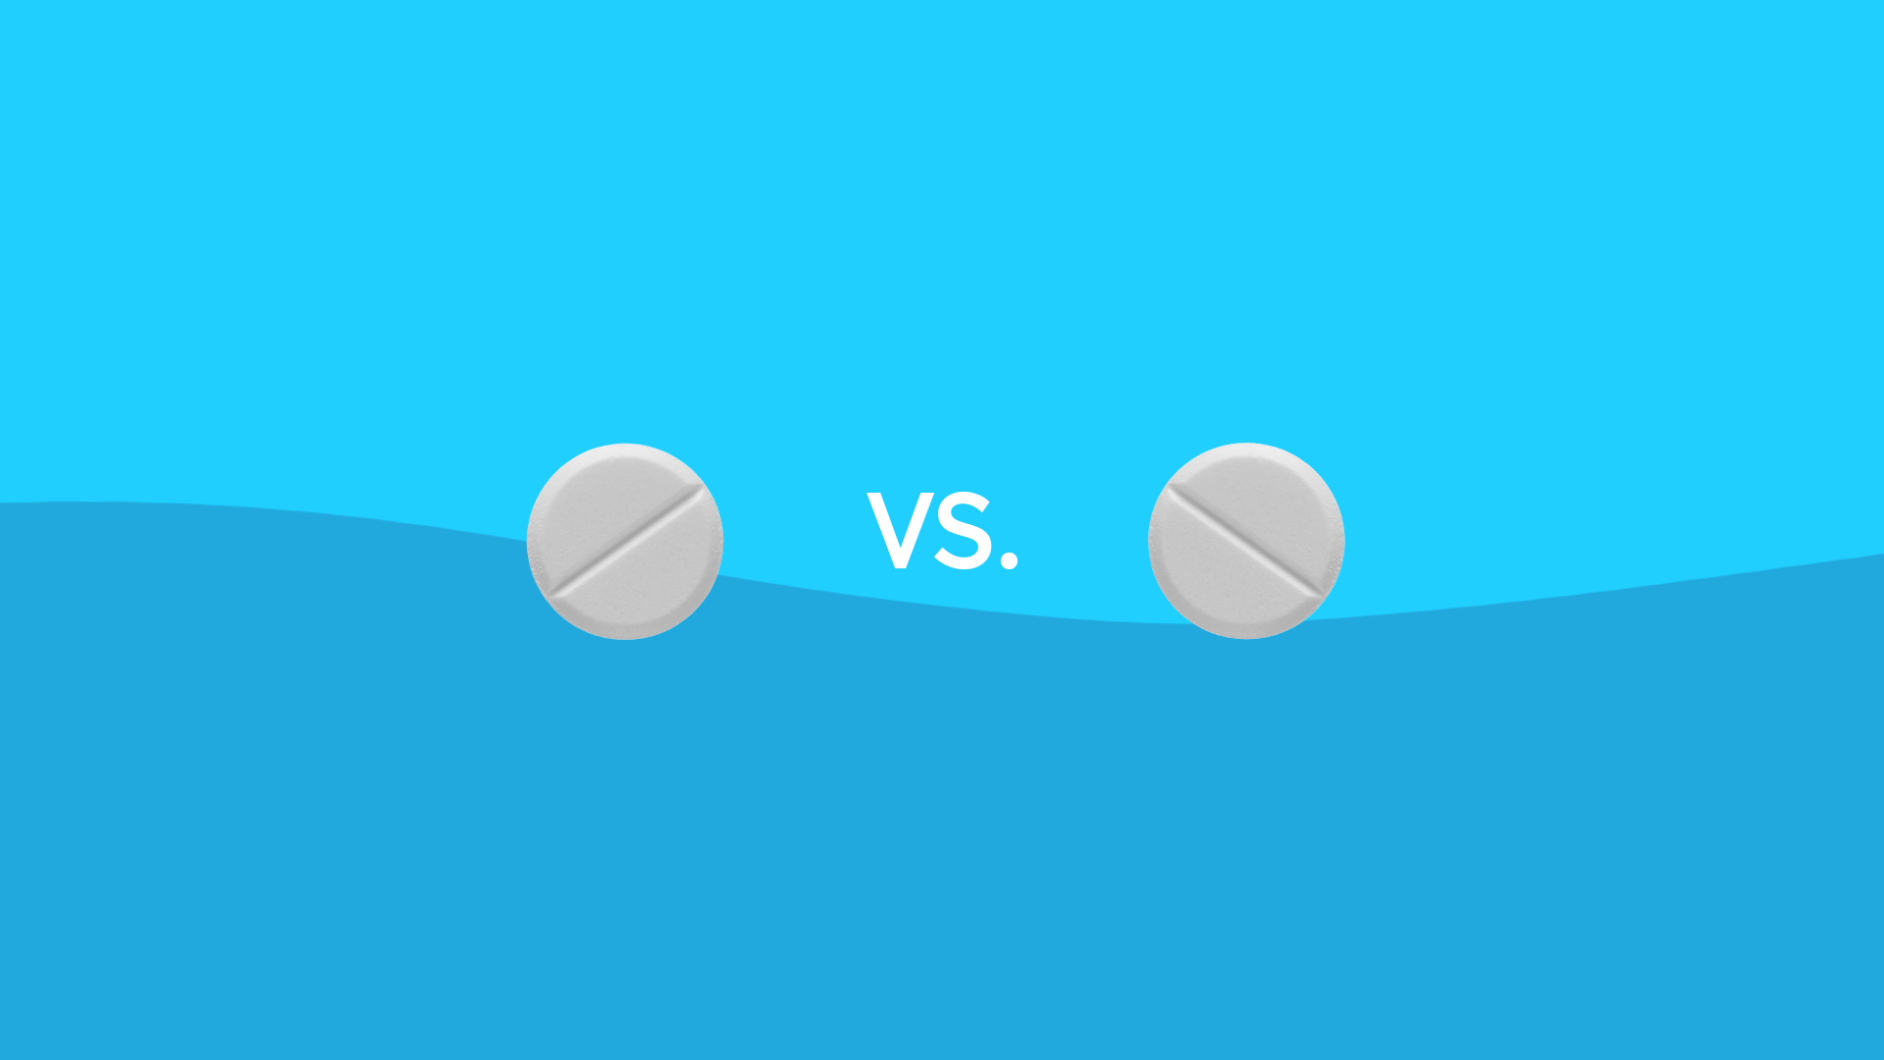 Jardiance vs. Invokana drug comparison